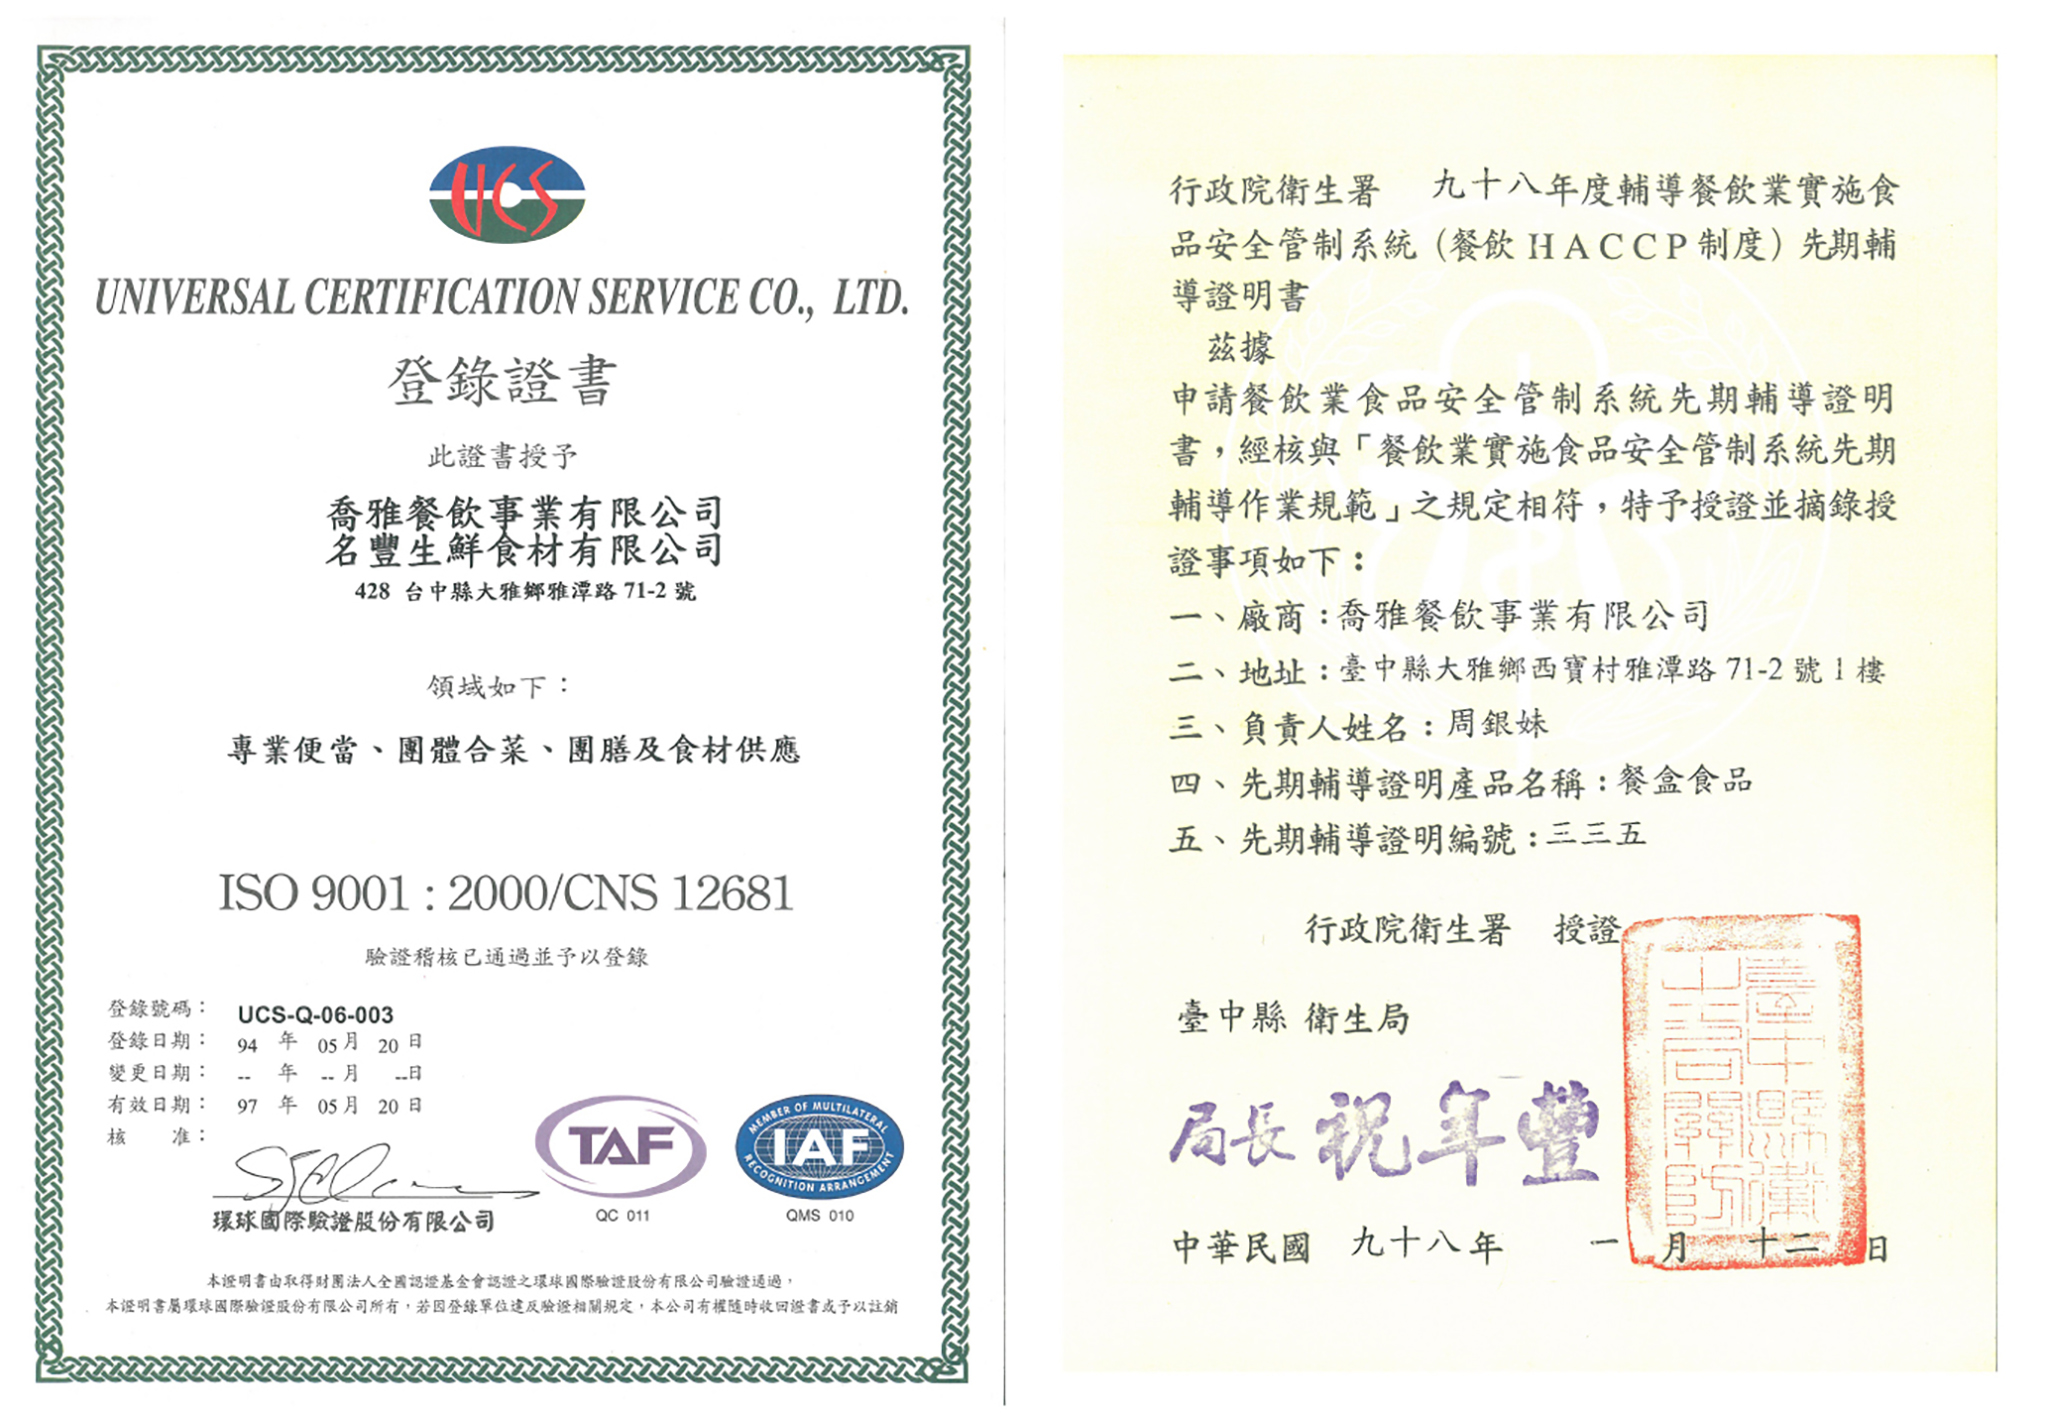 喬雅餐飲事業擁有HACCP與ISO雙證書認證。